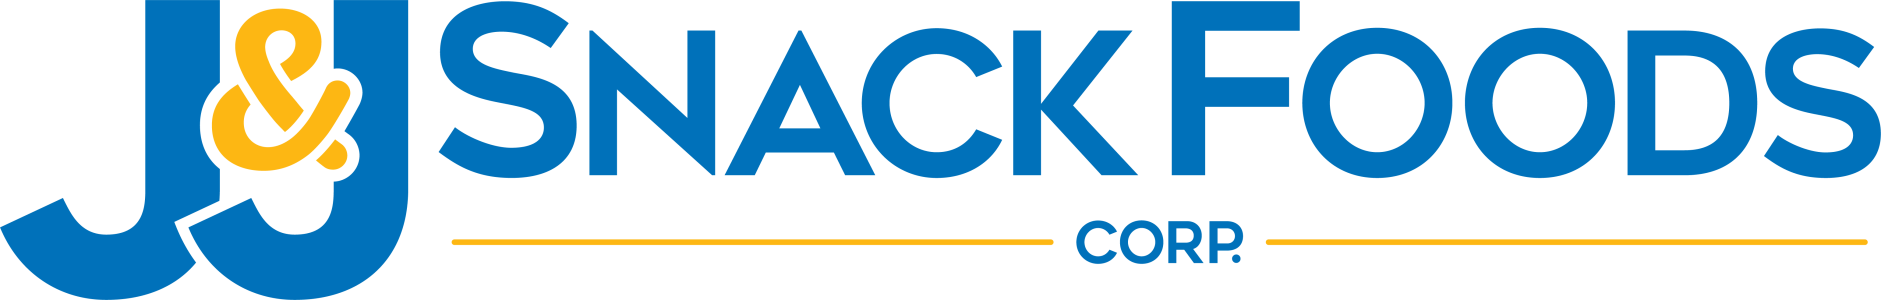 Logotipo da JJ Snack Food Corp